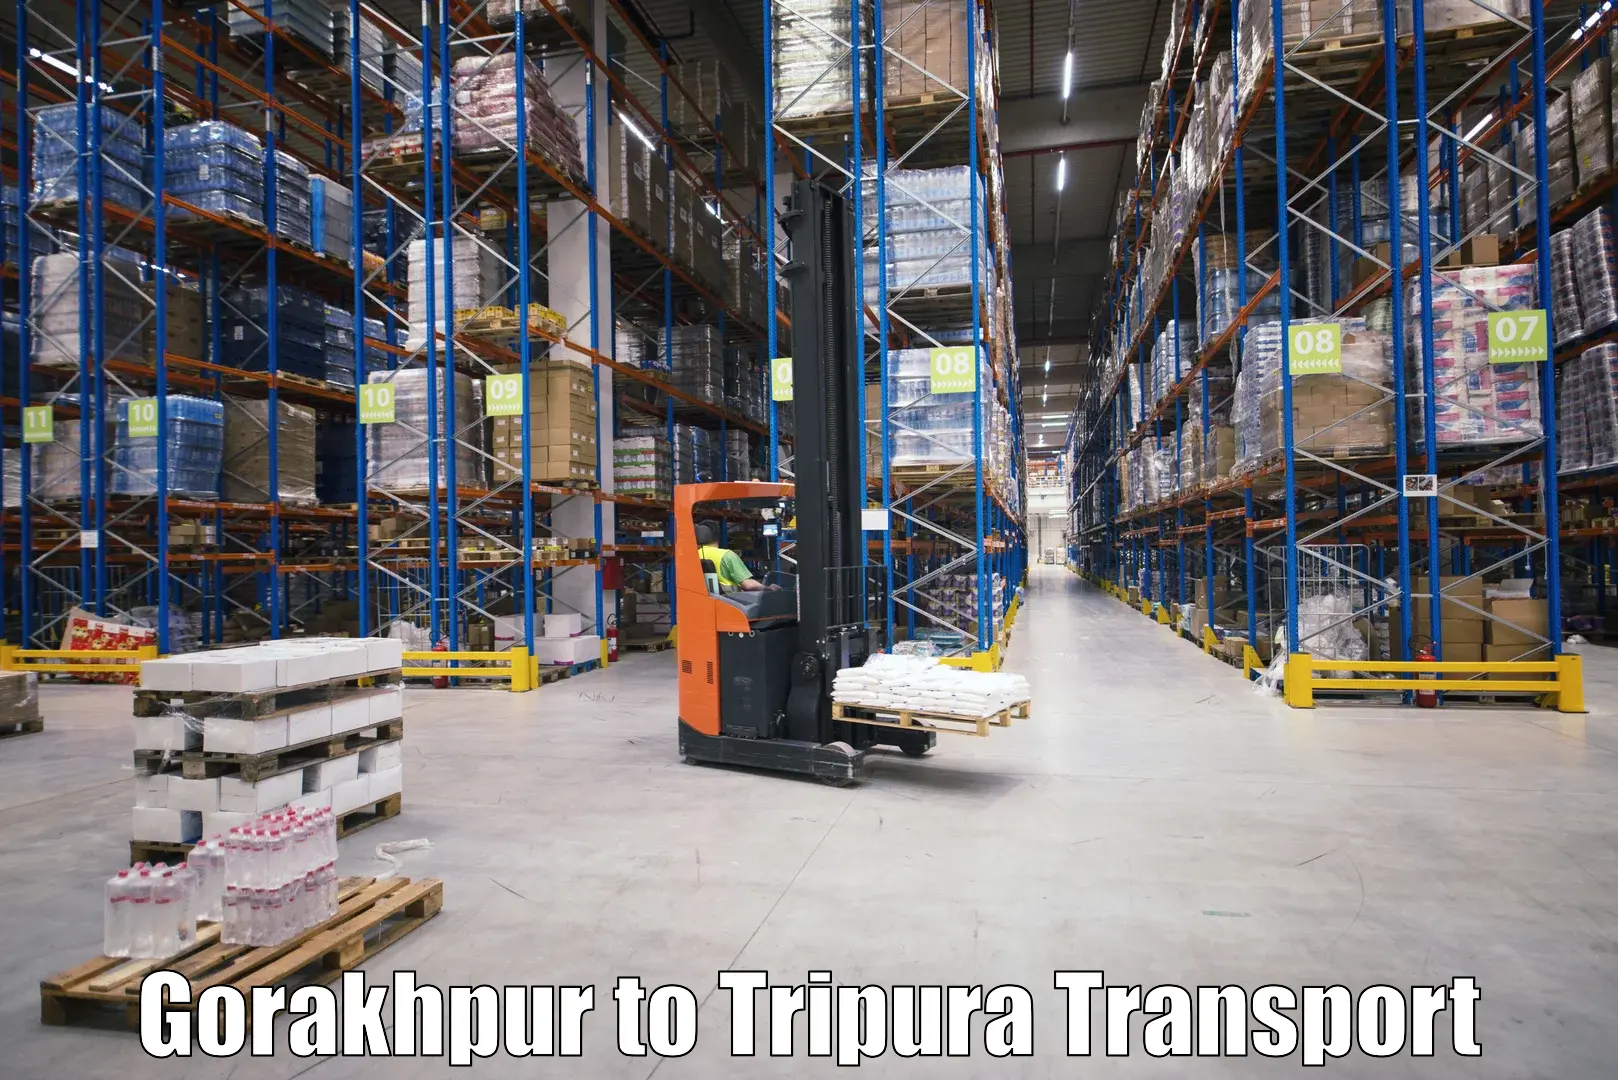 Scooty transport charges Gorakhpur to Kailashahar